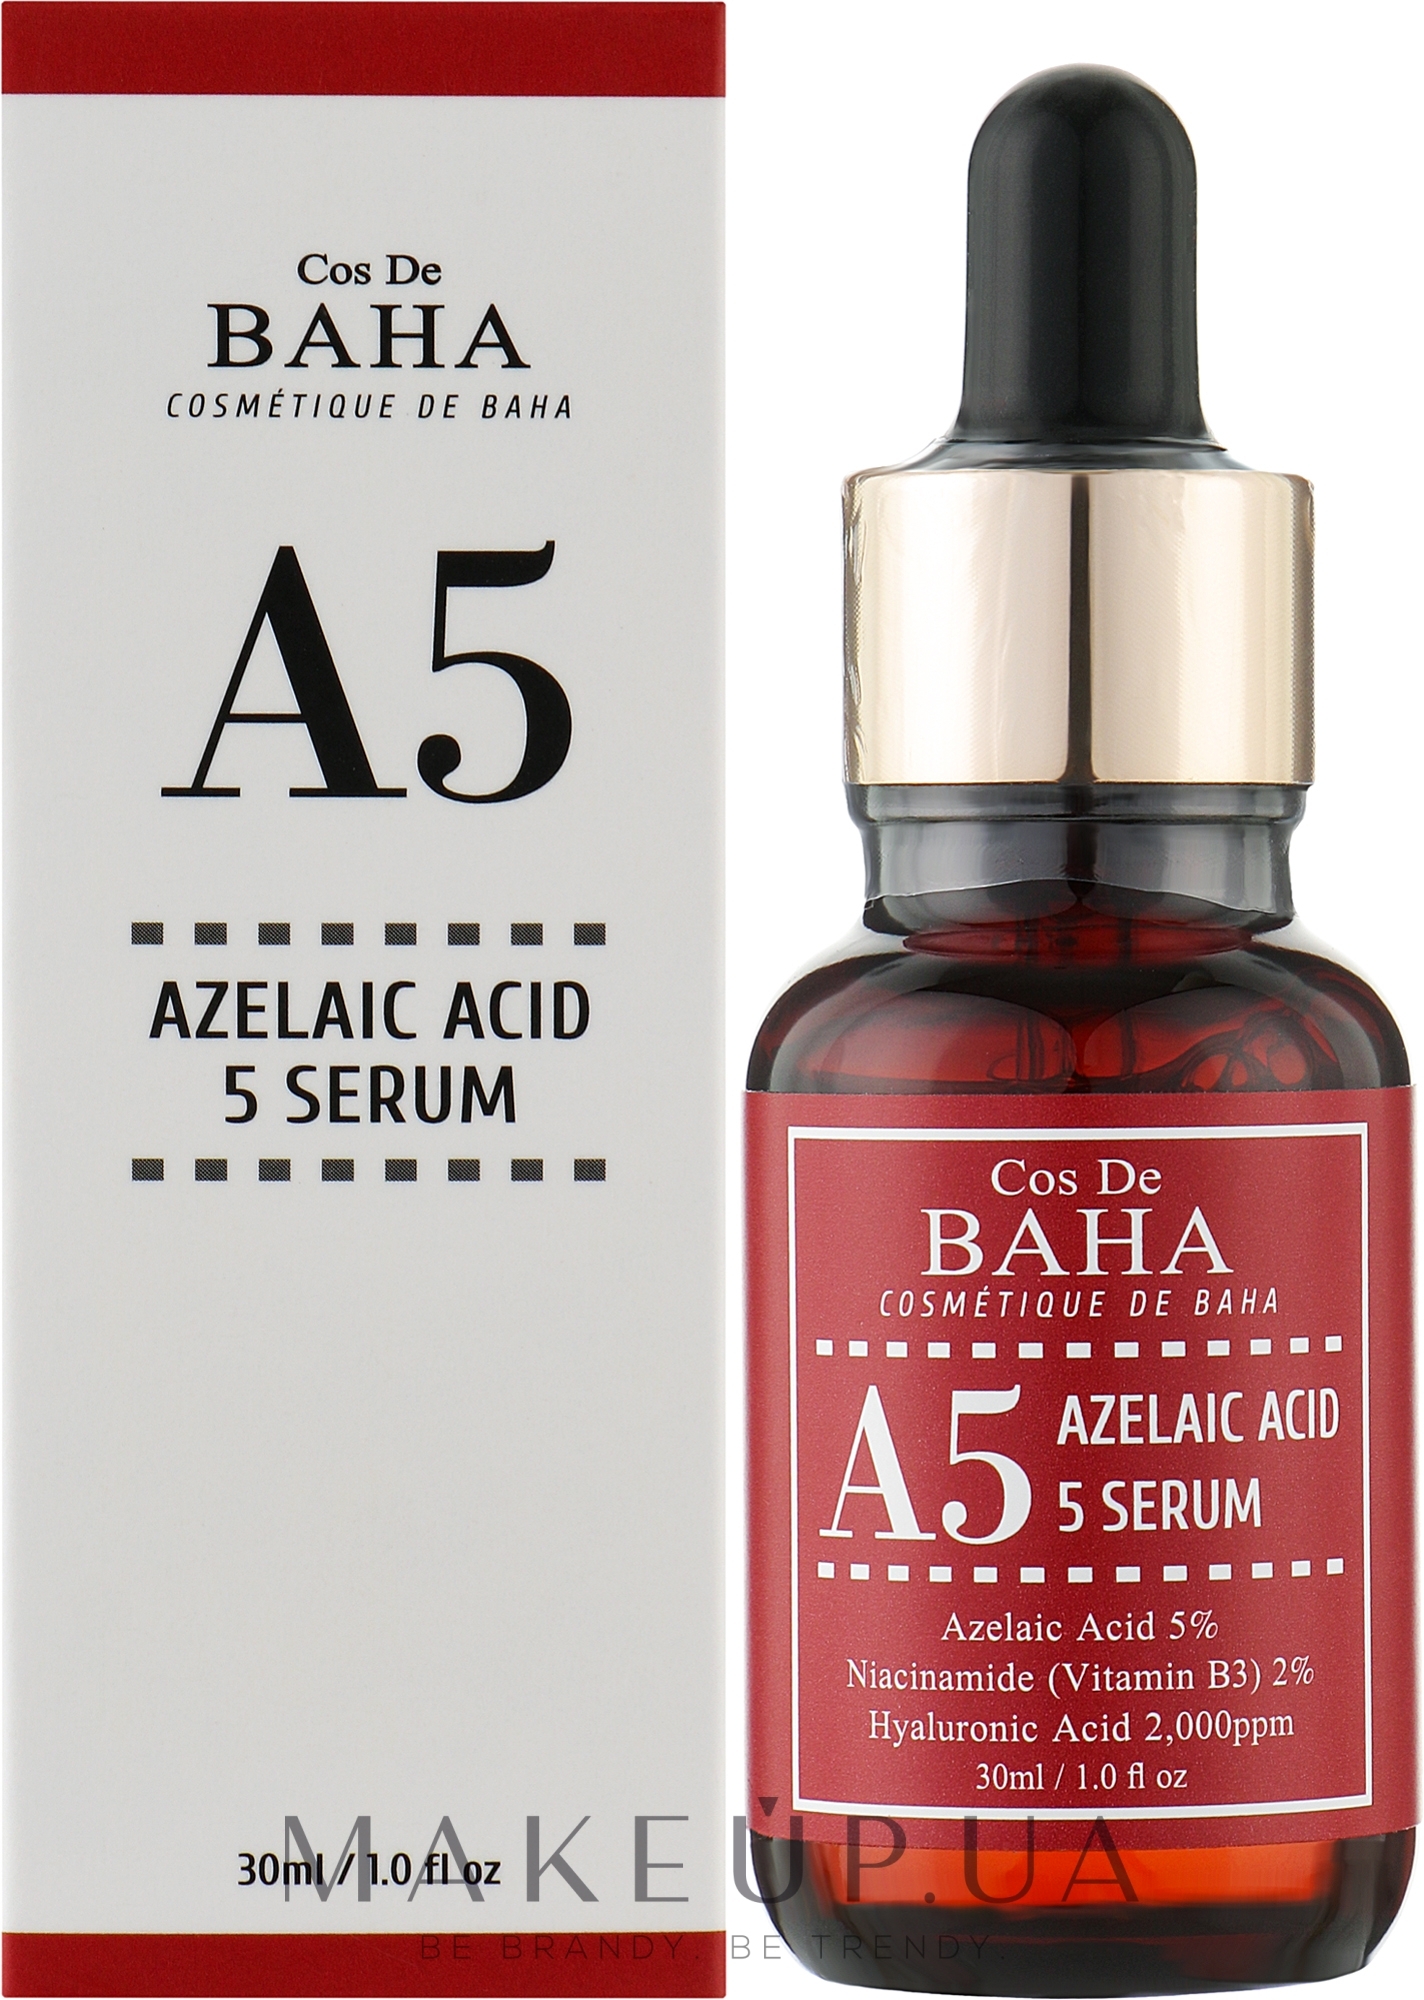 Сыворотка для лица с азелаиновой кислотой 5% - Cos De Baha A5 Azlaic Acid 5% Serum — фото 30ml